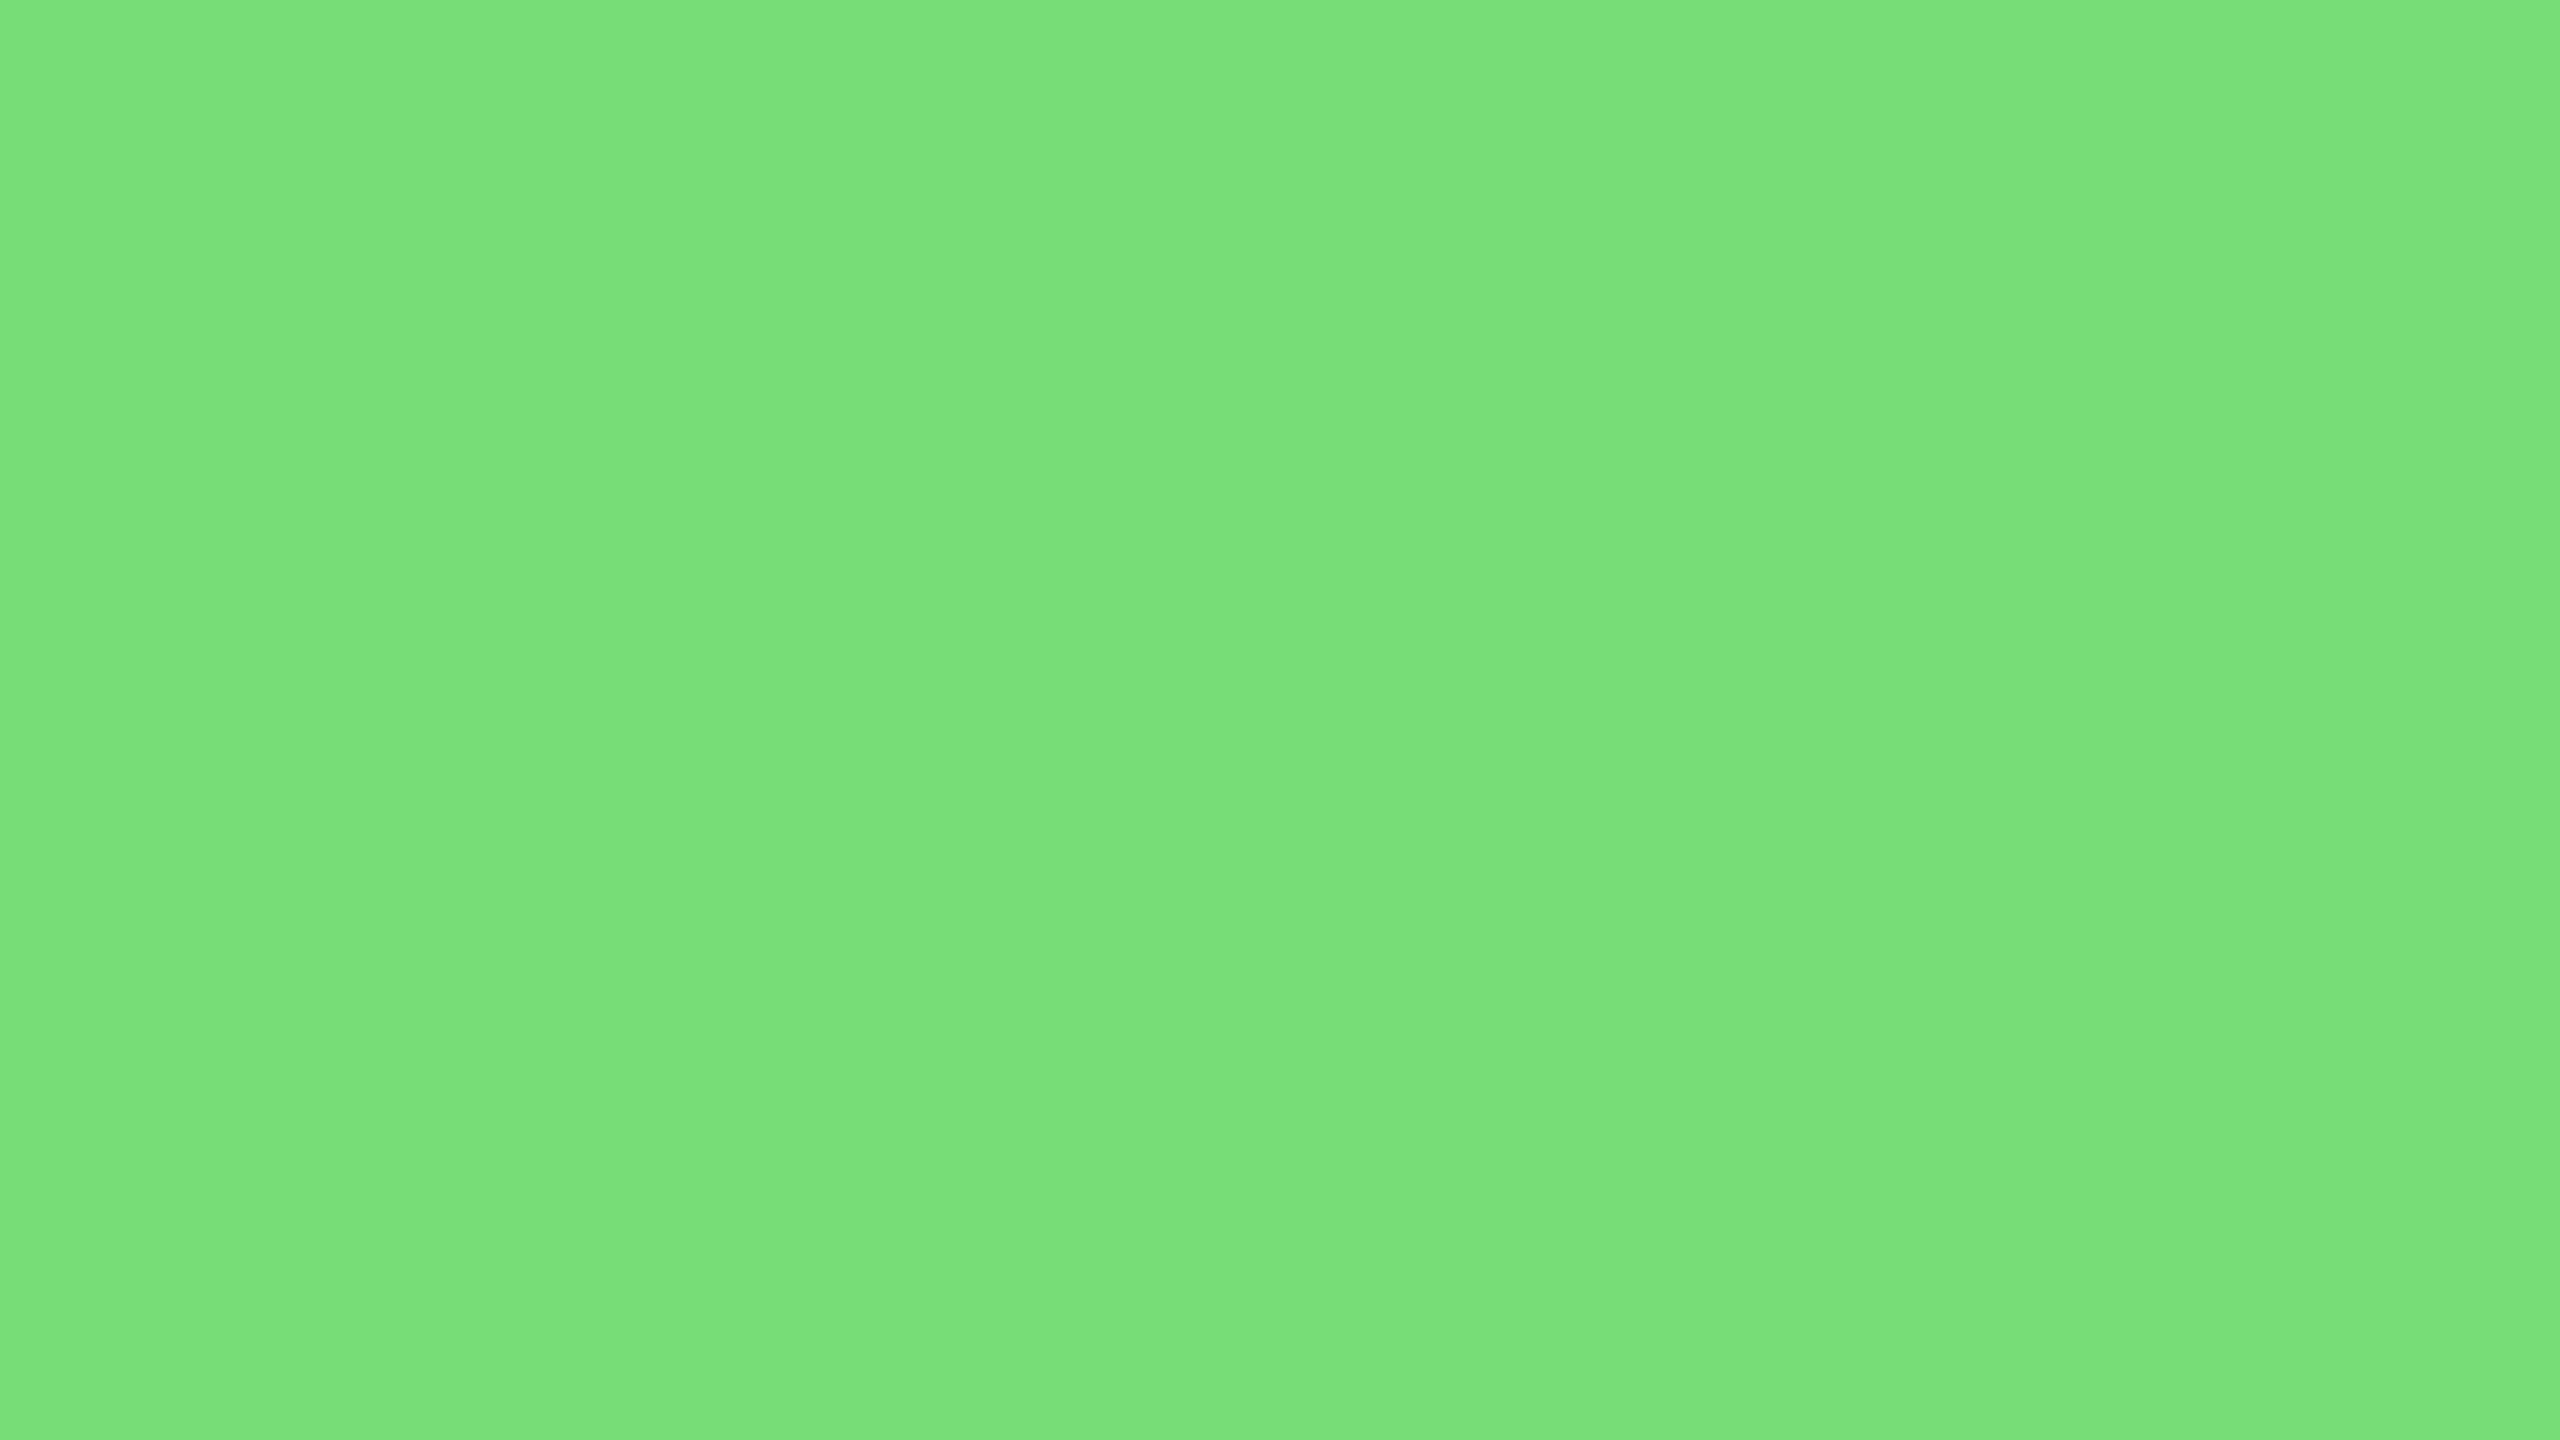 2560x1440 2560Ã1440-pastel-green-solid-color-background.jpg